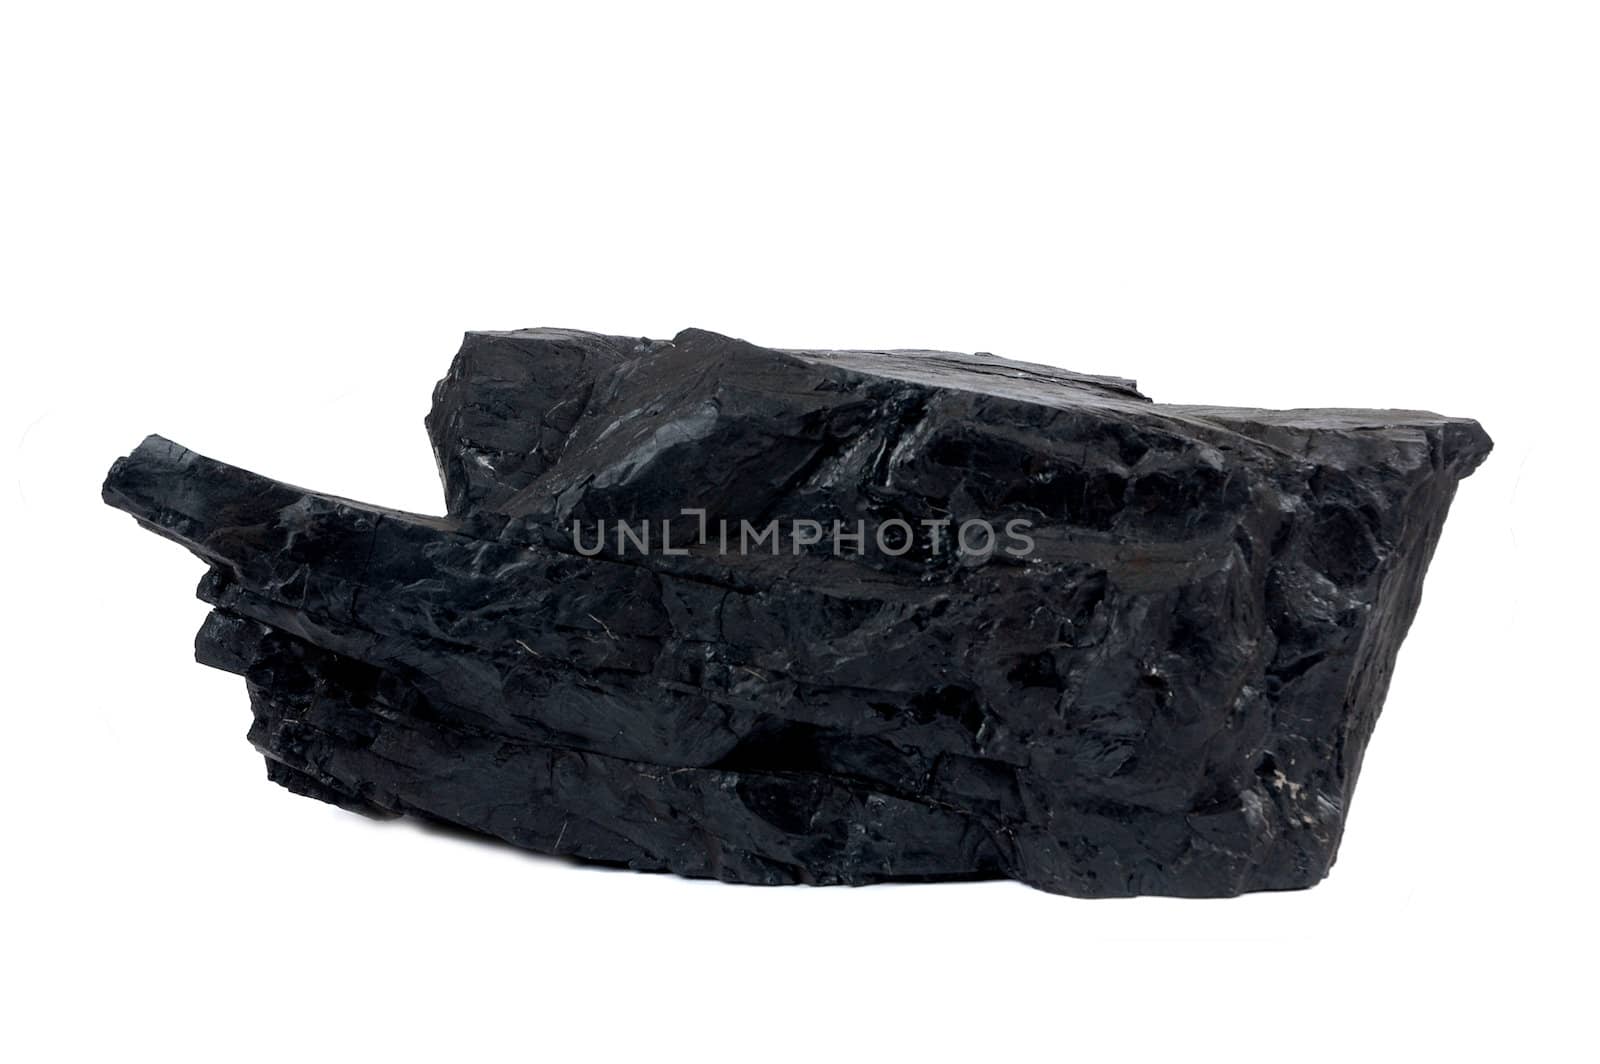 a big lump of coal  by antonihalim